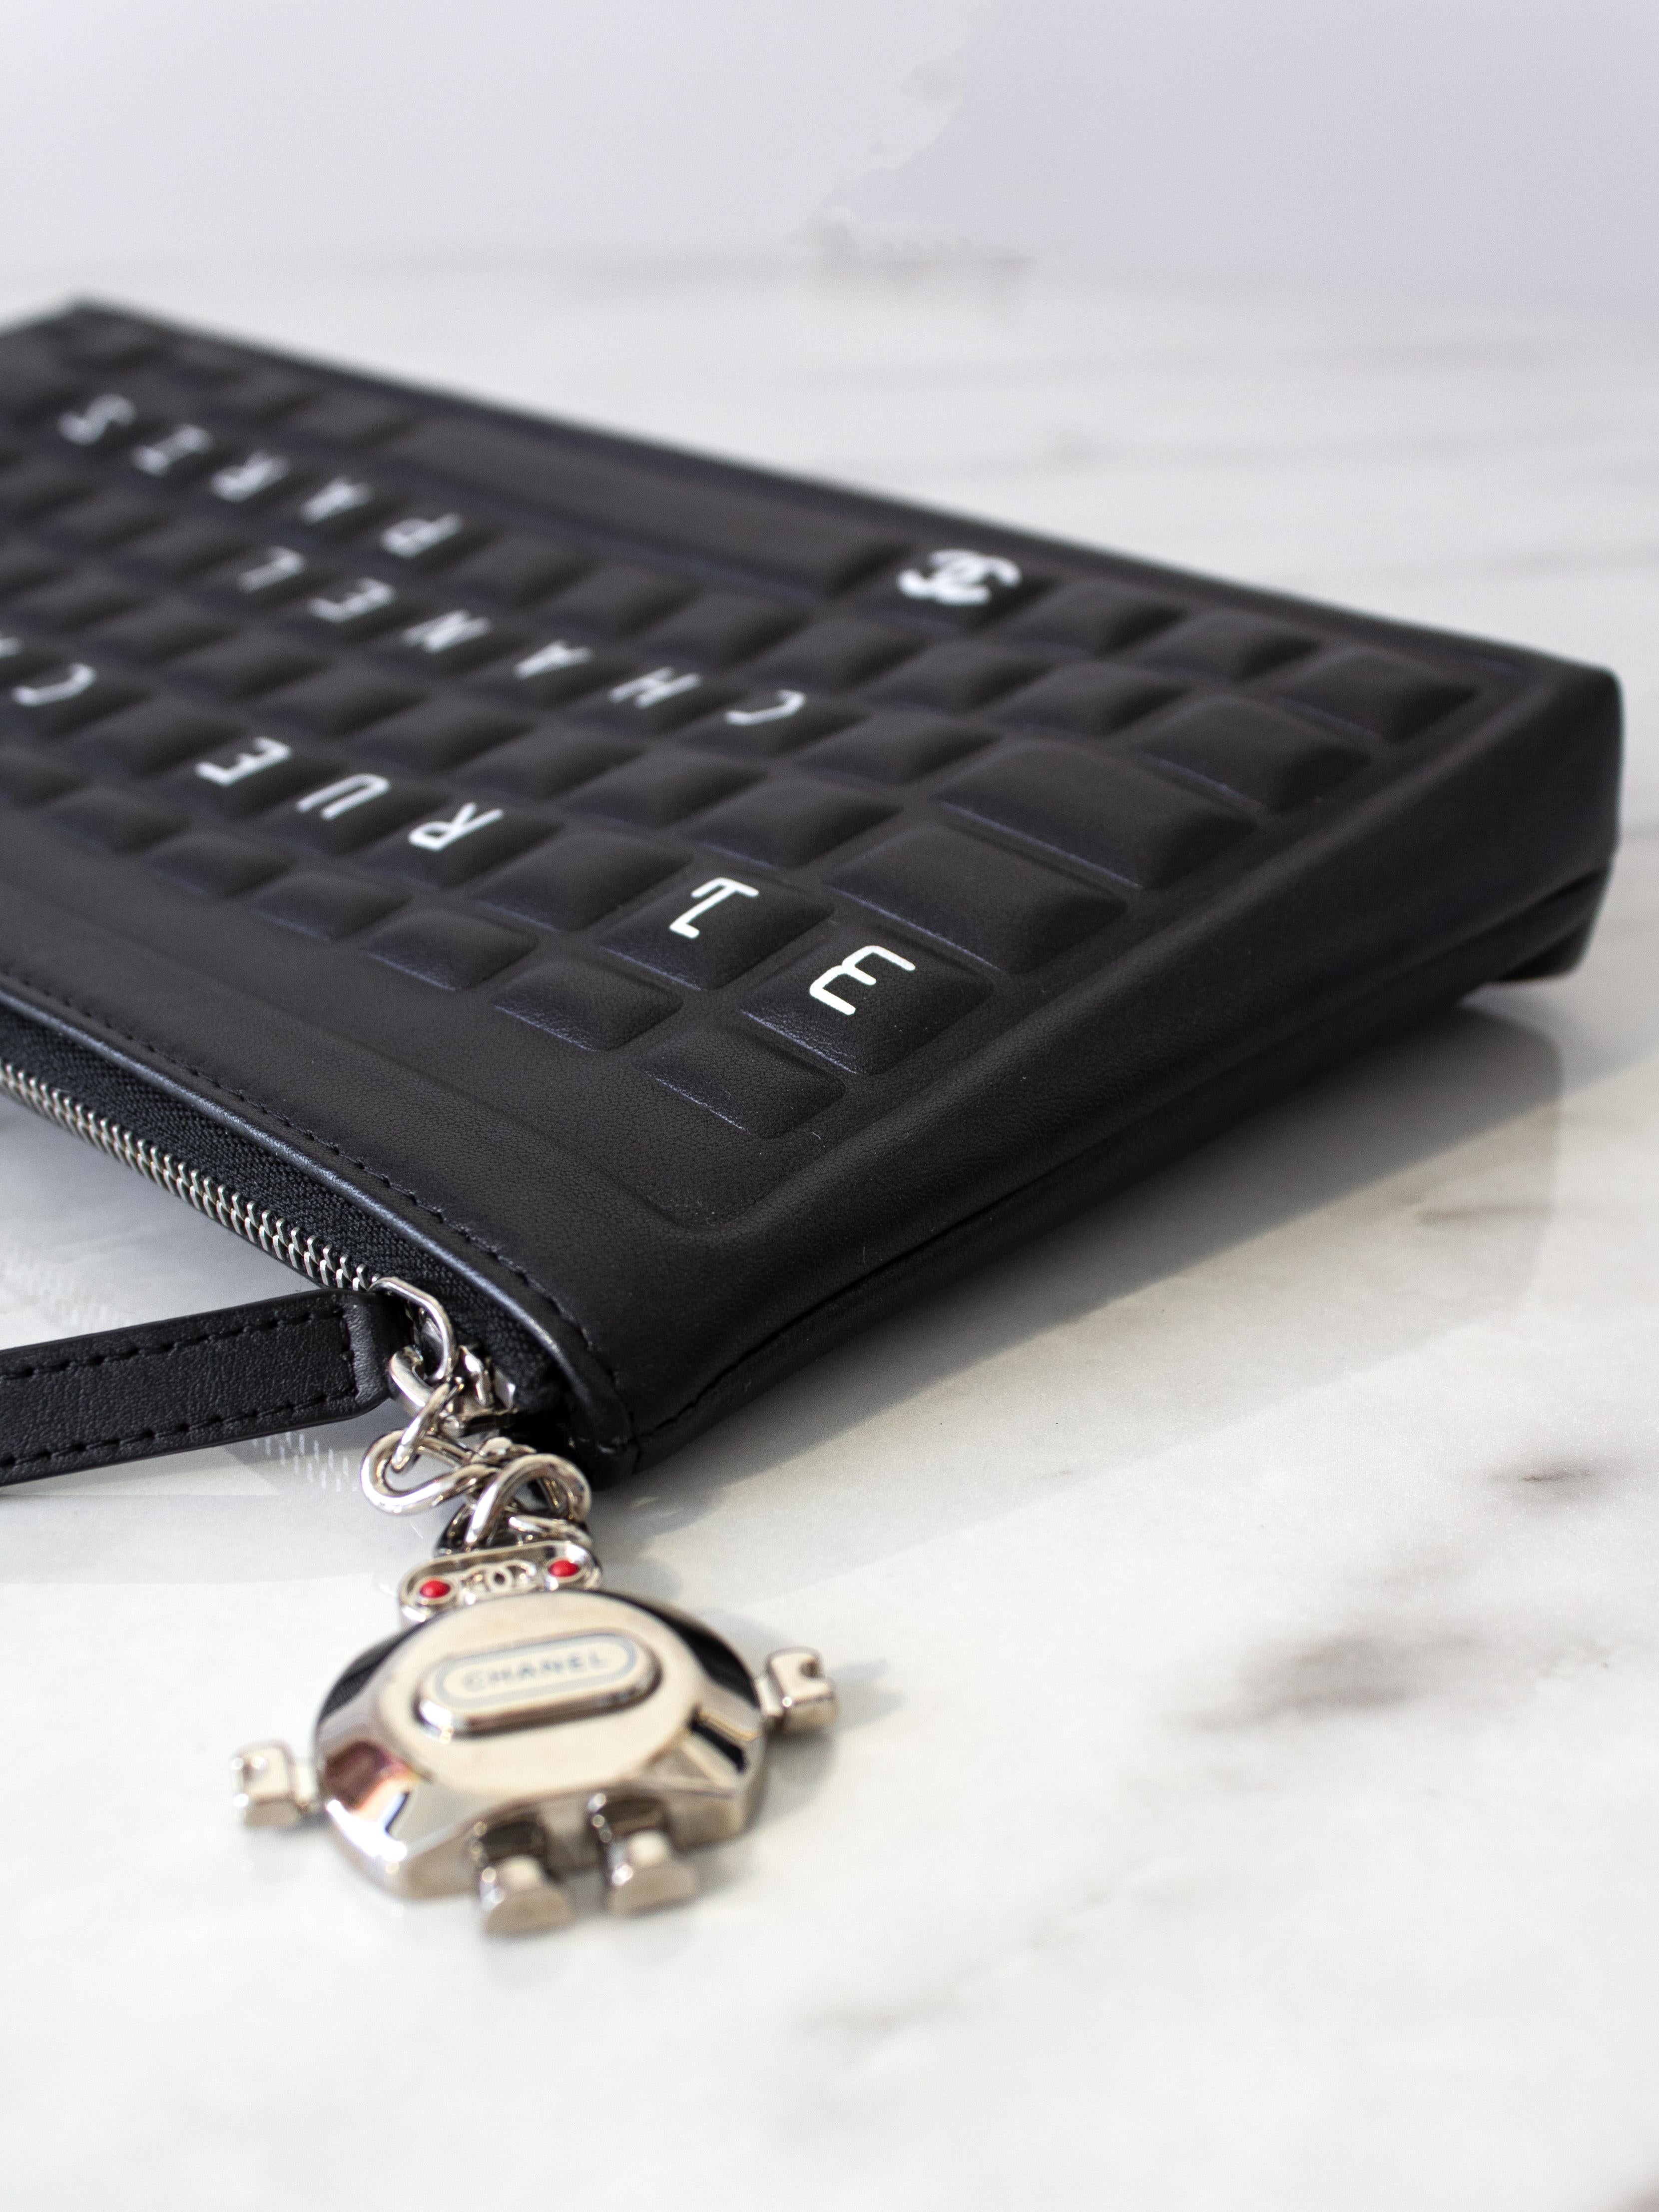 Chanel F/S 2017 Data Center Schwarz Silber Roboter Cocobot Leder Keyboard Clutch  3